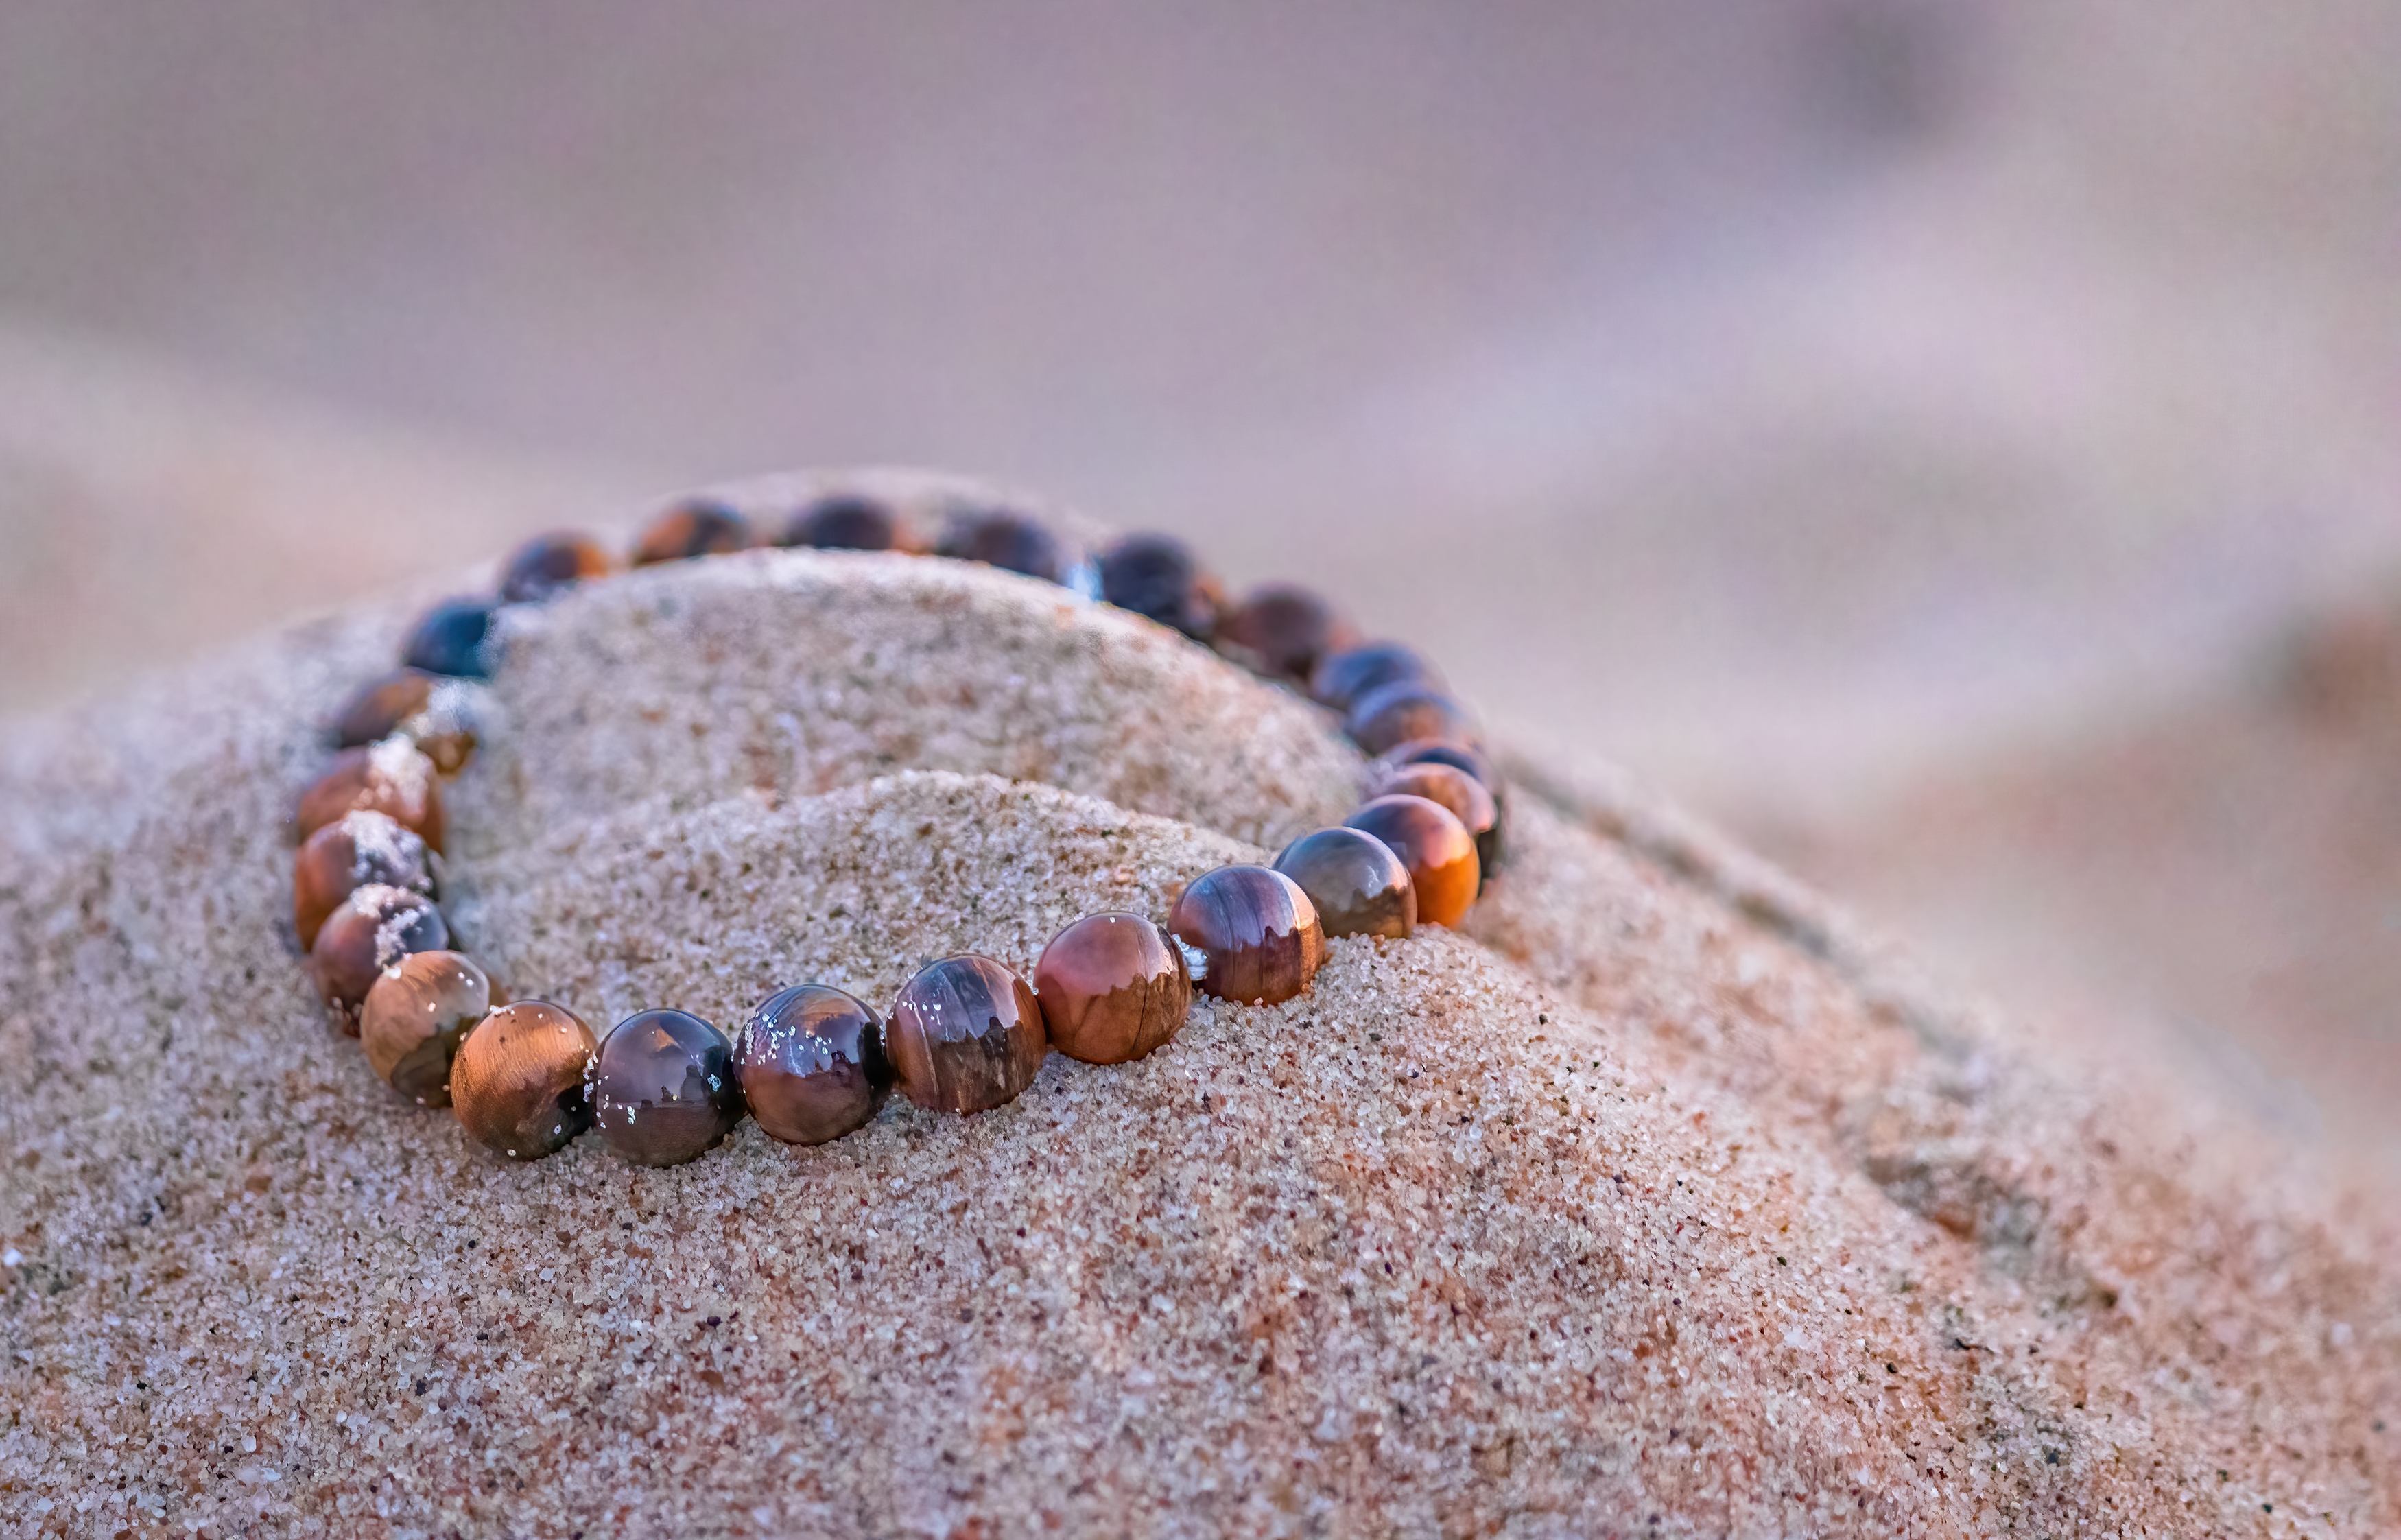 A Tiger's Eye bracelet on top of sand